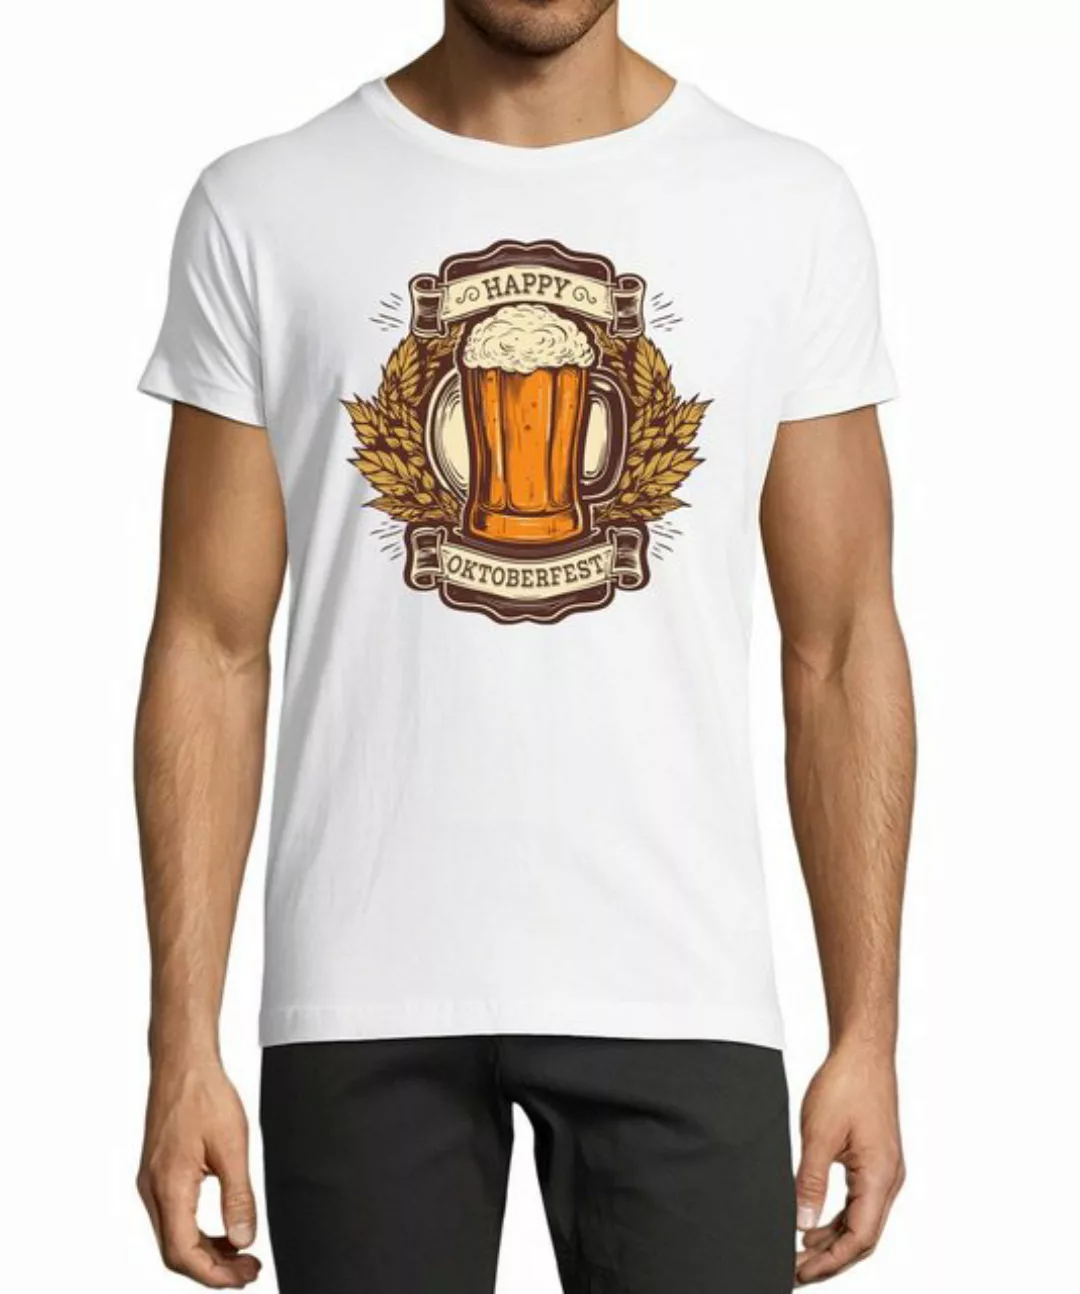 MyDesign24 T-Shirt Herren Fun Print Shirt - Happy Oktoberfest T-Shirt Trink günstig online kaufen